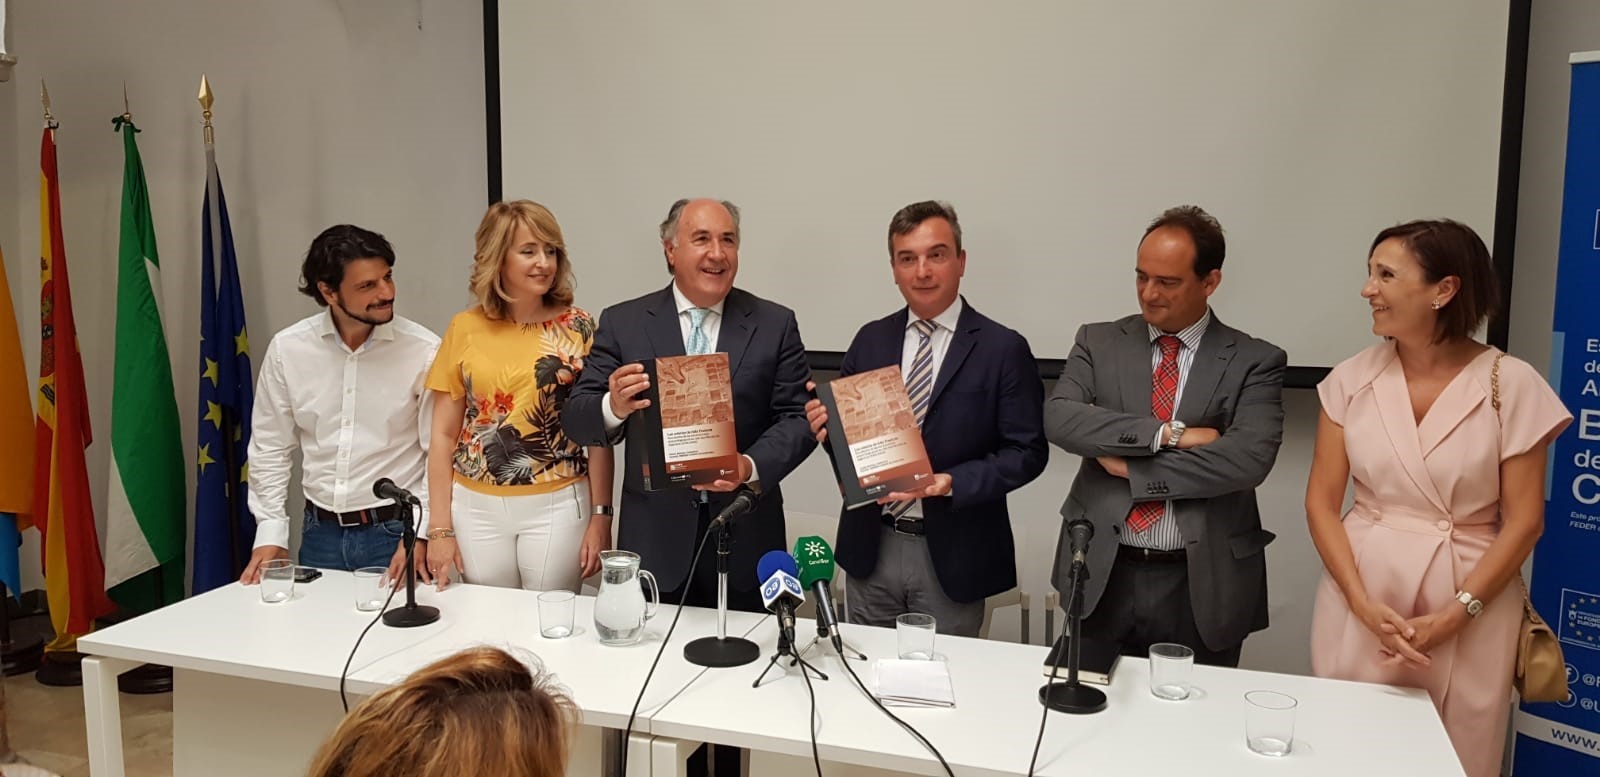 UCA y Ayuntamiento presentan el libro ‘La cetariae de Ivlia Tradvcta’ en el Campus Bahía de Algeciras